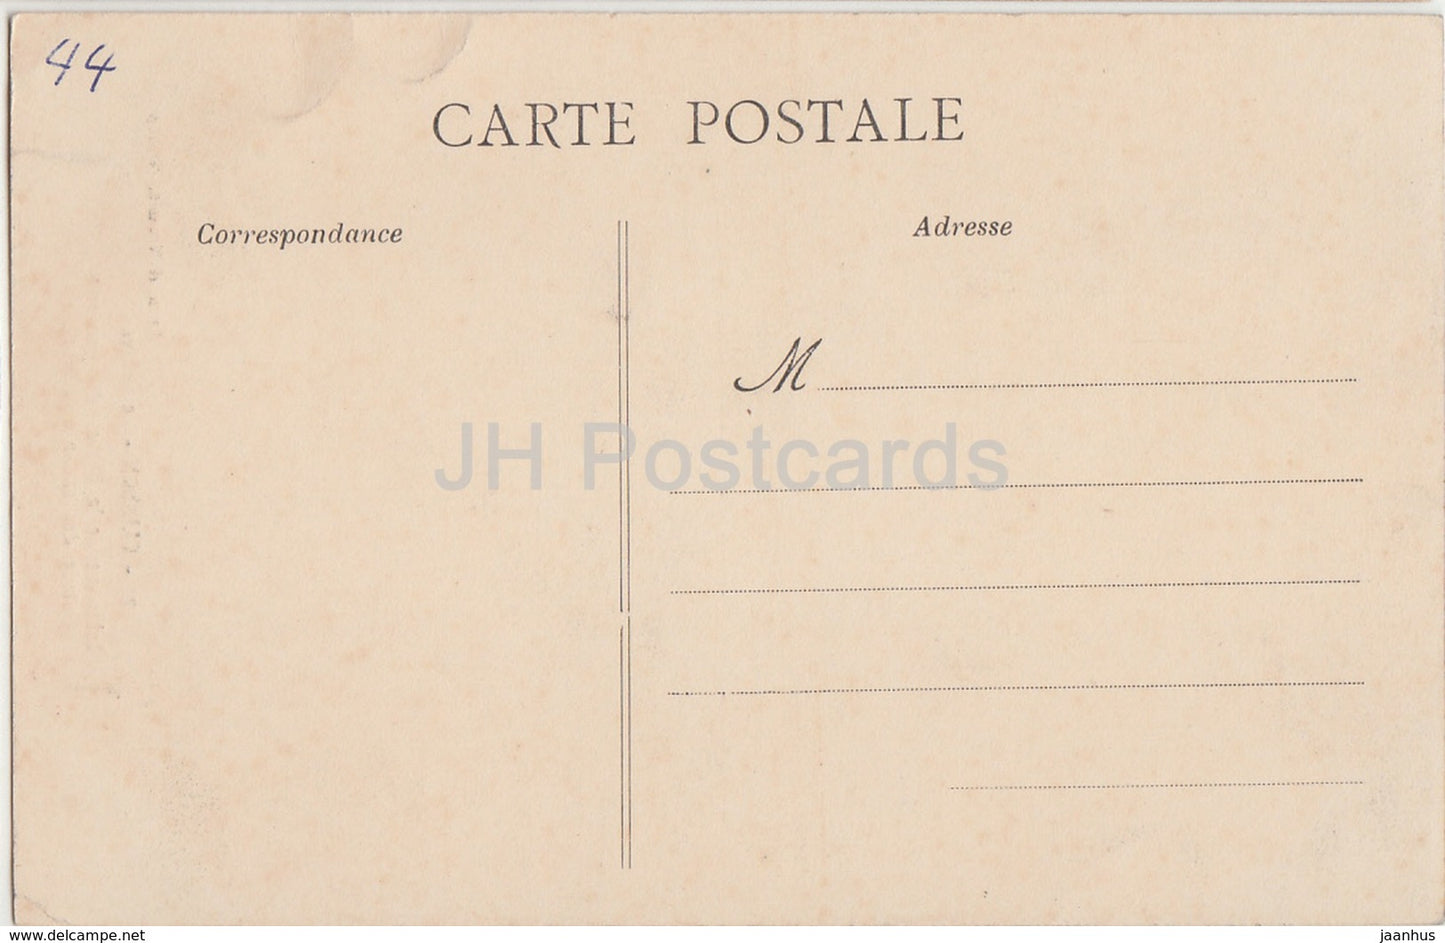 Clisson - Le Chateau - Interieur de la Prison des Femmes - castle prison - 24 - old postcard - France - unused